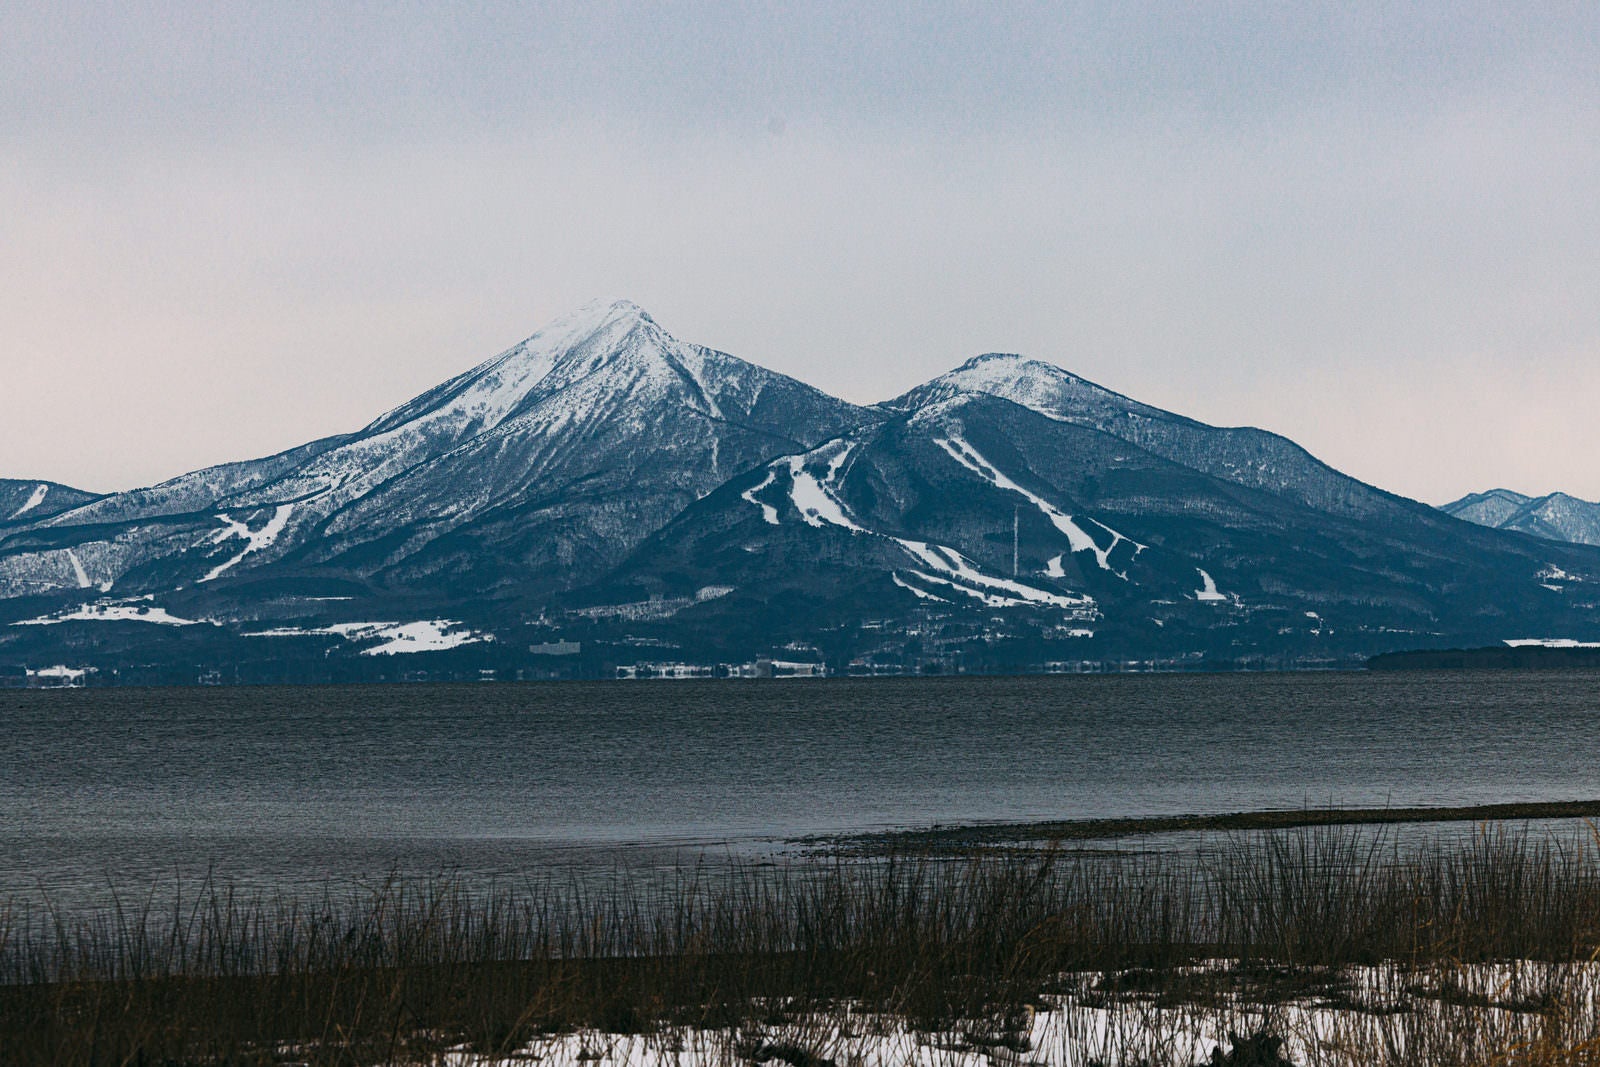 「雪が残る2月上旬の磐梯山と猪苗代湖」の写真